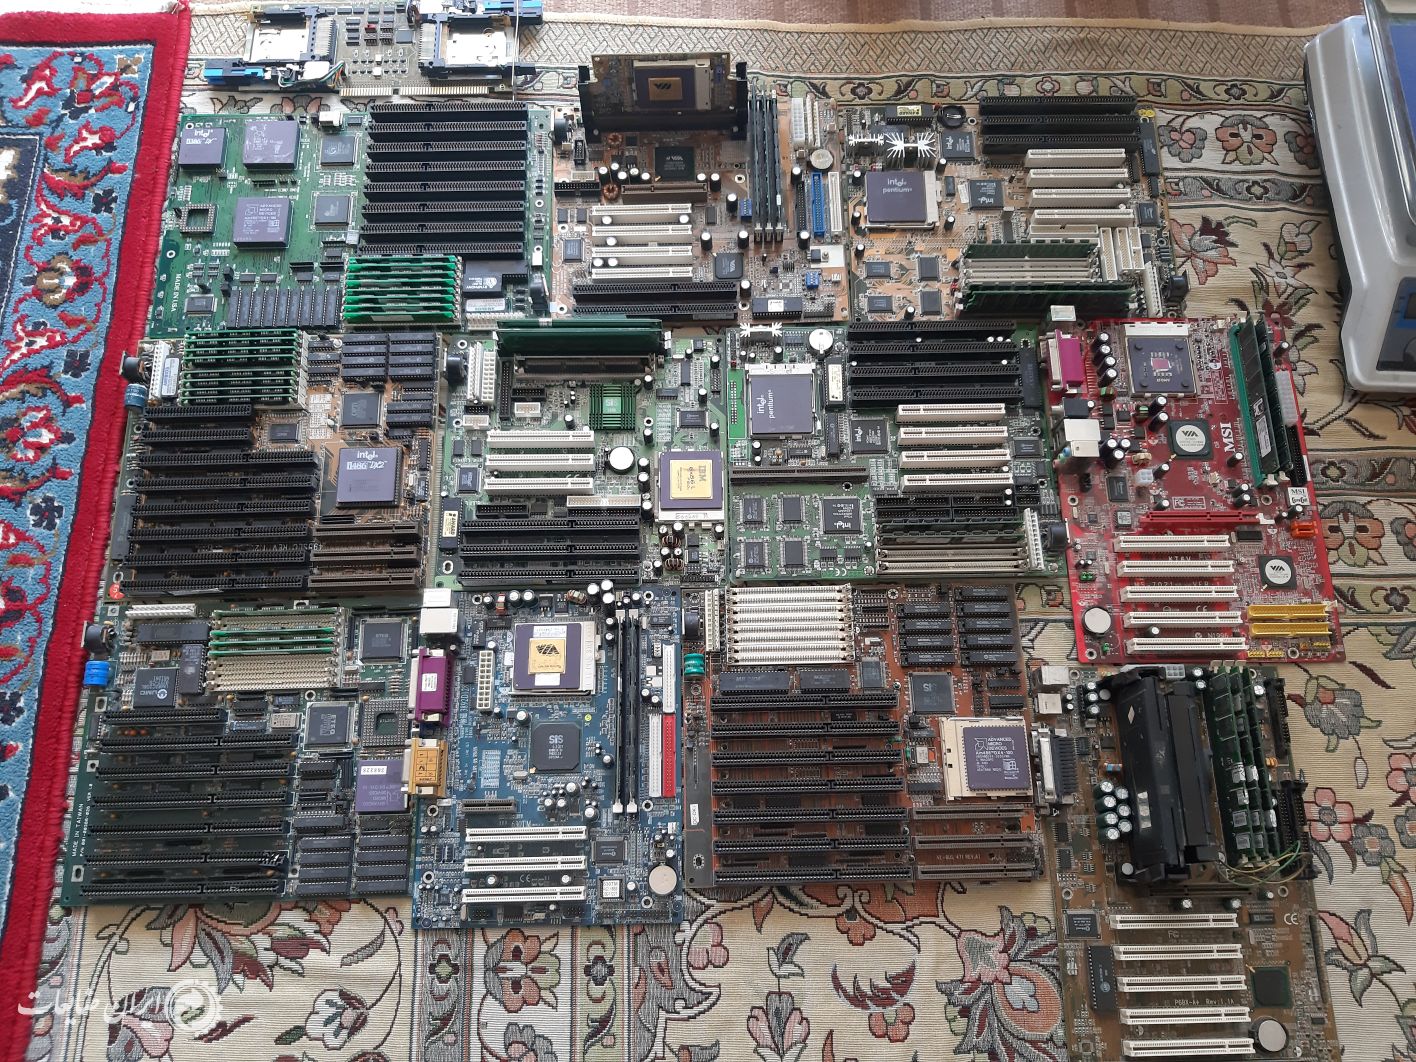 خریدار برد ها و قطعات ضایعاتی کامپیوتر